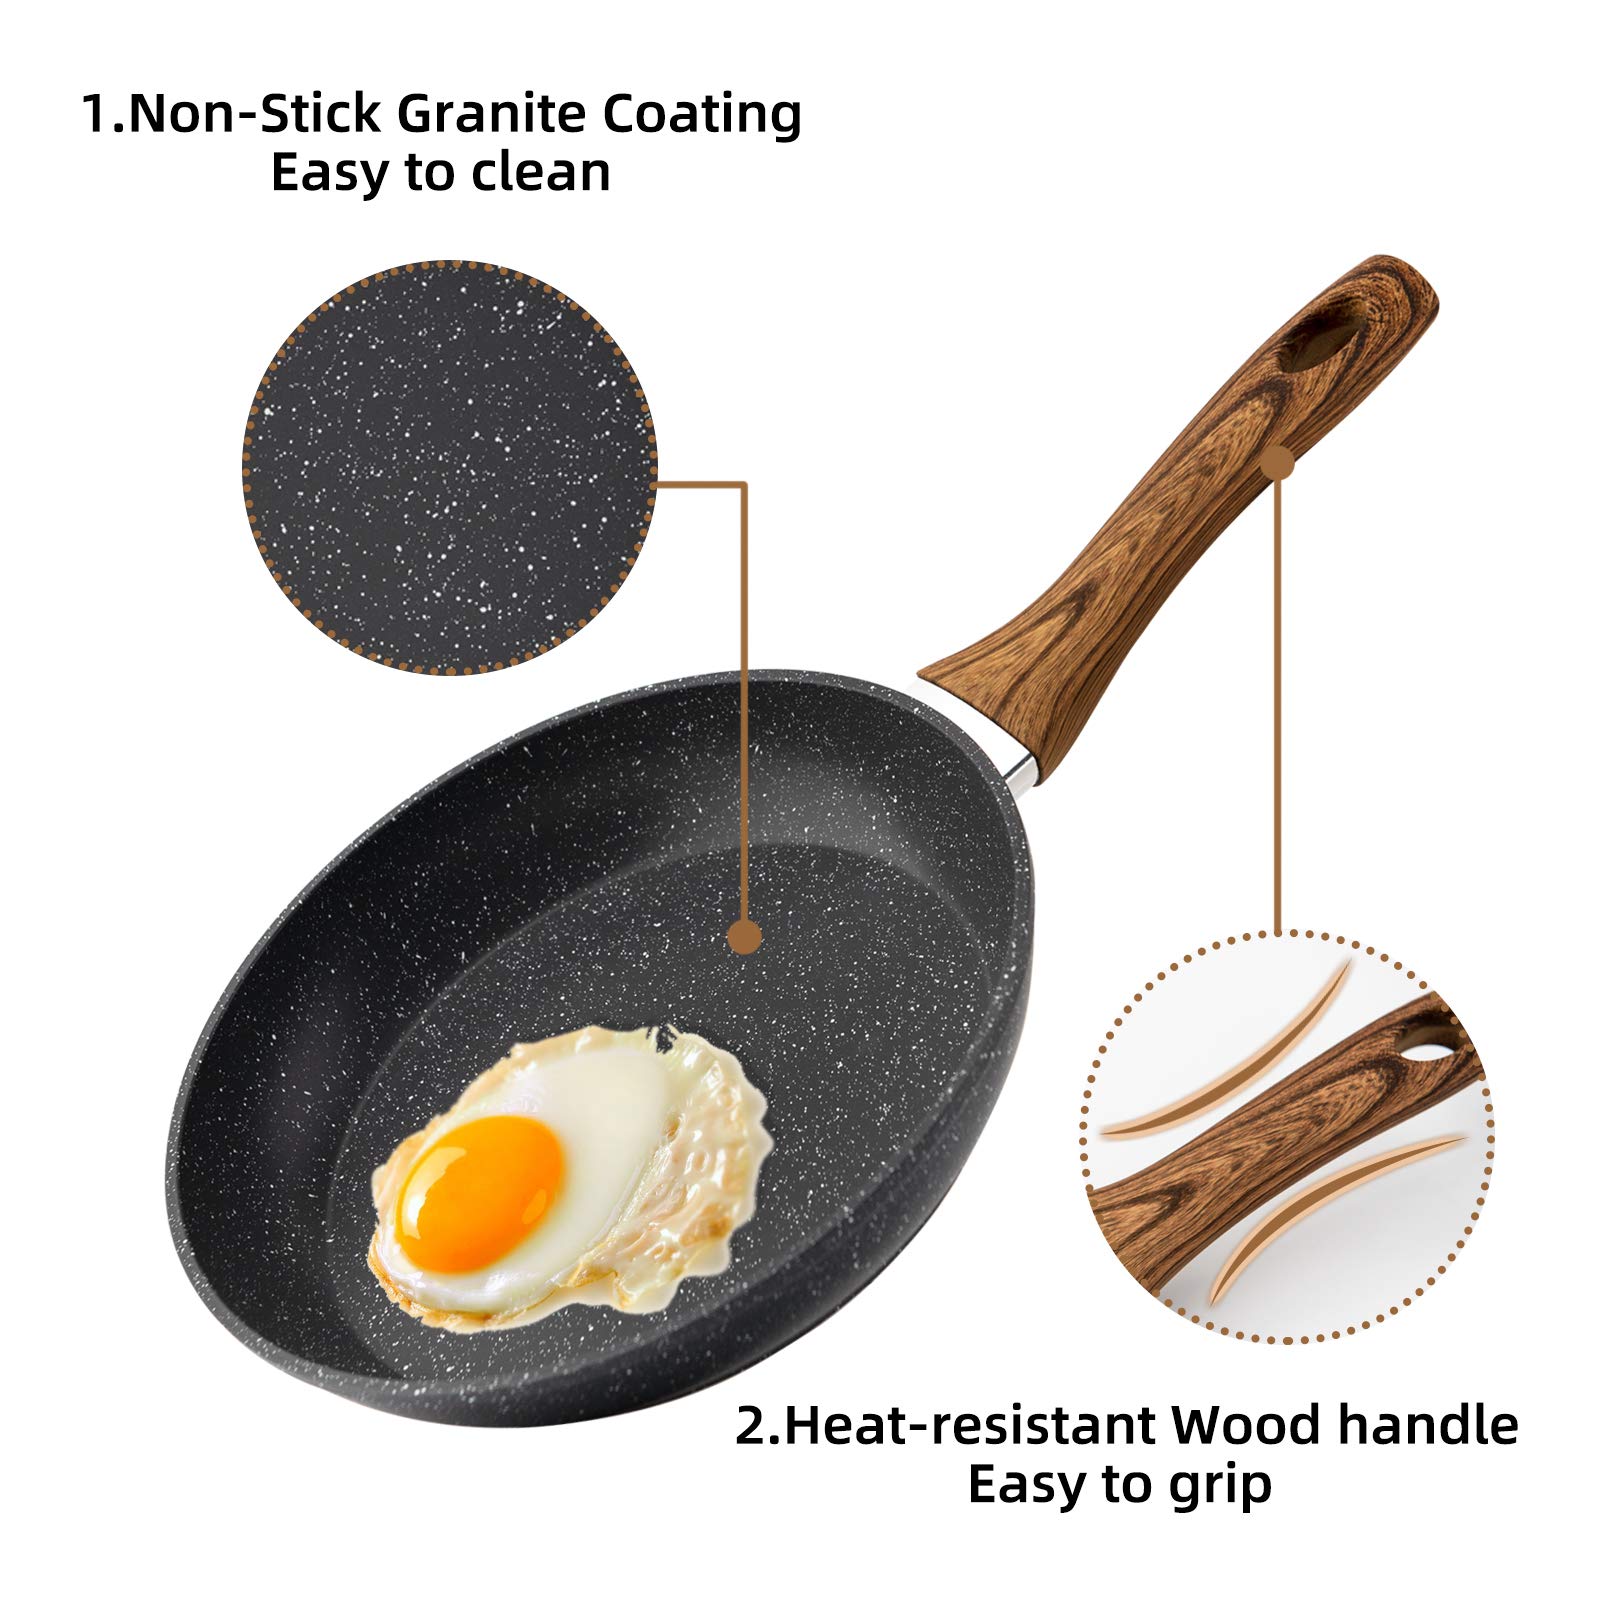 Nonstick 3-Piece Cookware Set with Frying Pan, Saucepan, and Woks, Heat-Resistant Design with Ergonomic Wood-Effect Bakelite Handles, PFOA-Free - Luxitt